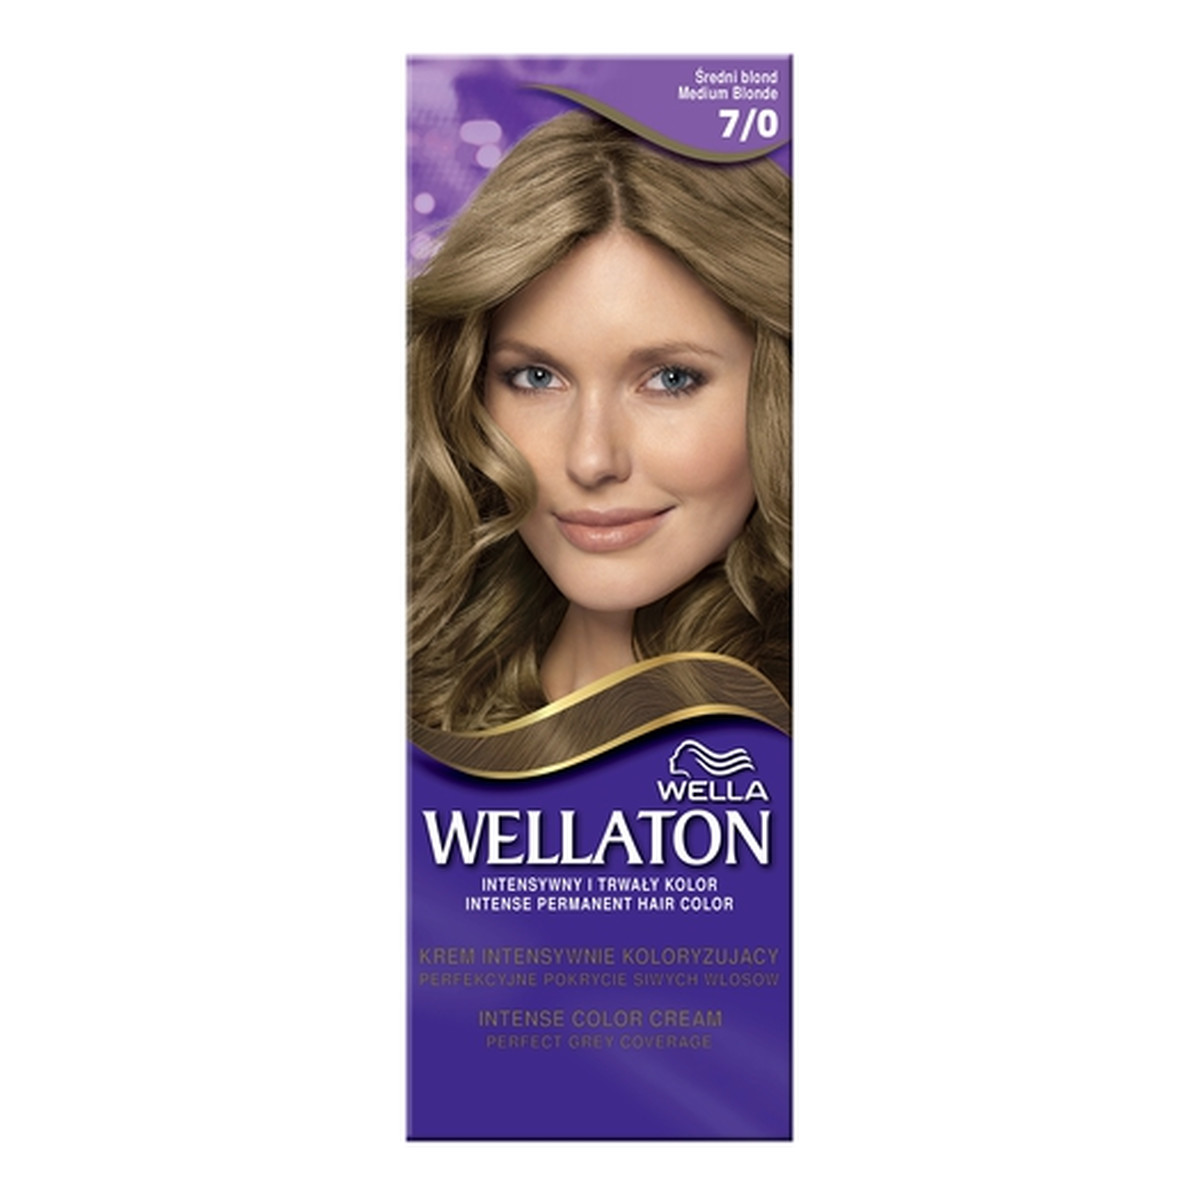 Wella Wellaton Krem Trwale Koloryzujący Średni Blond (7/0) 110ml